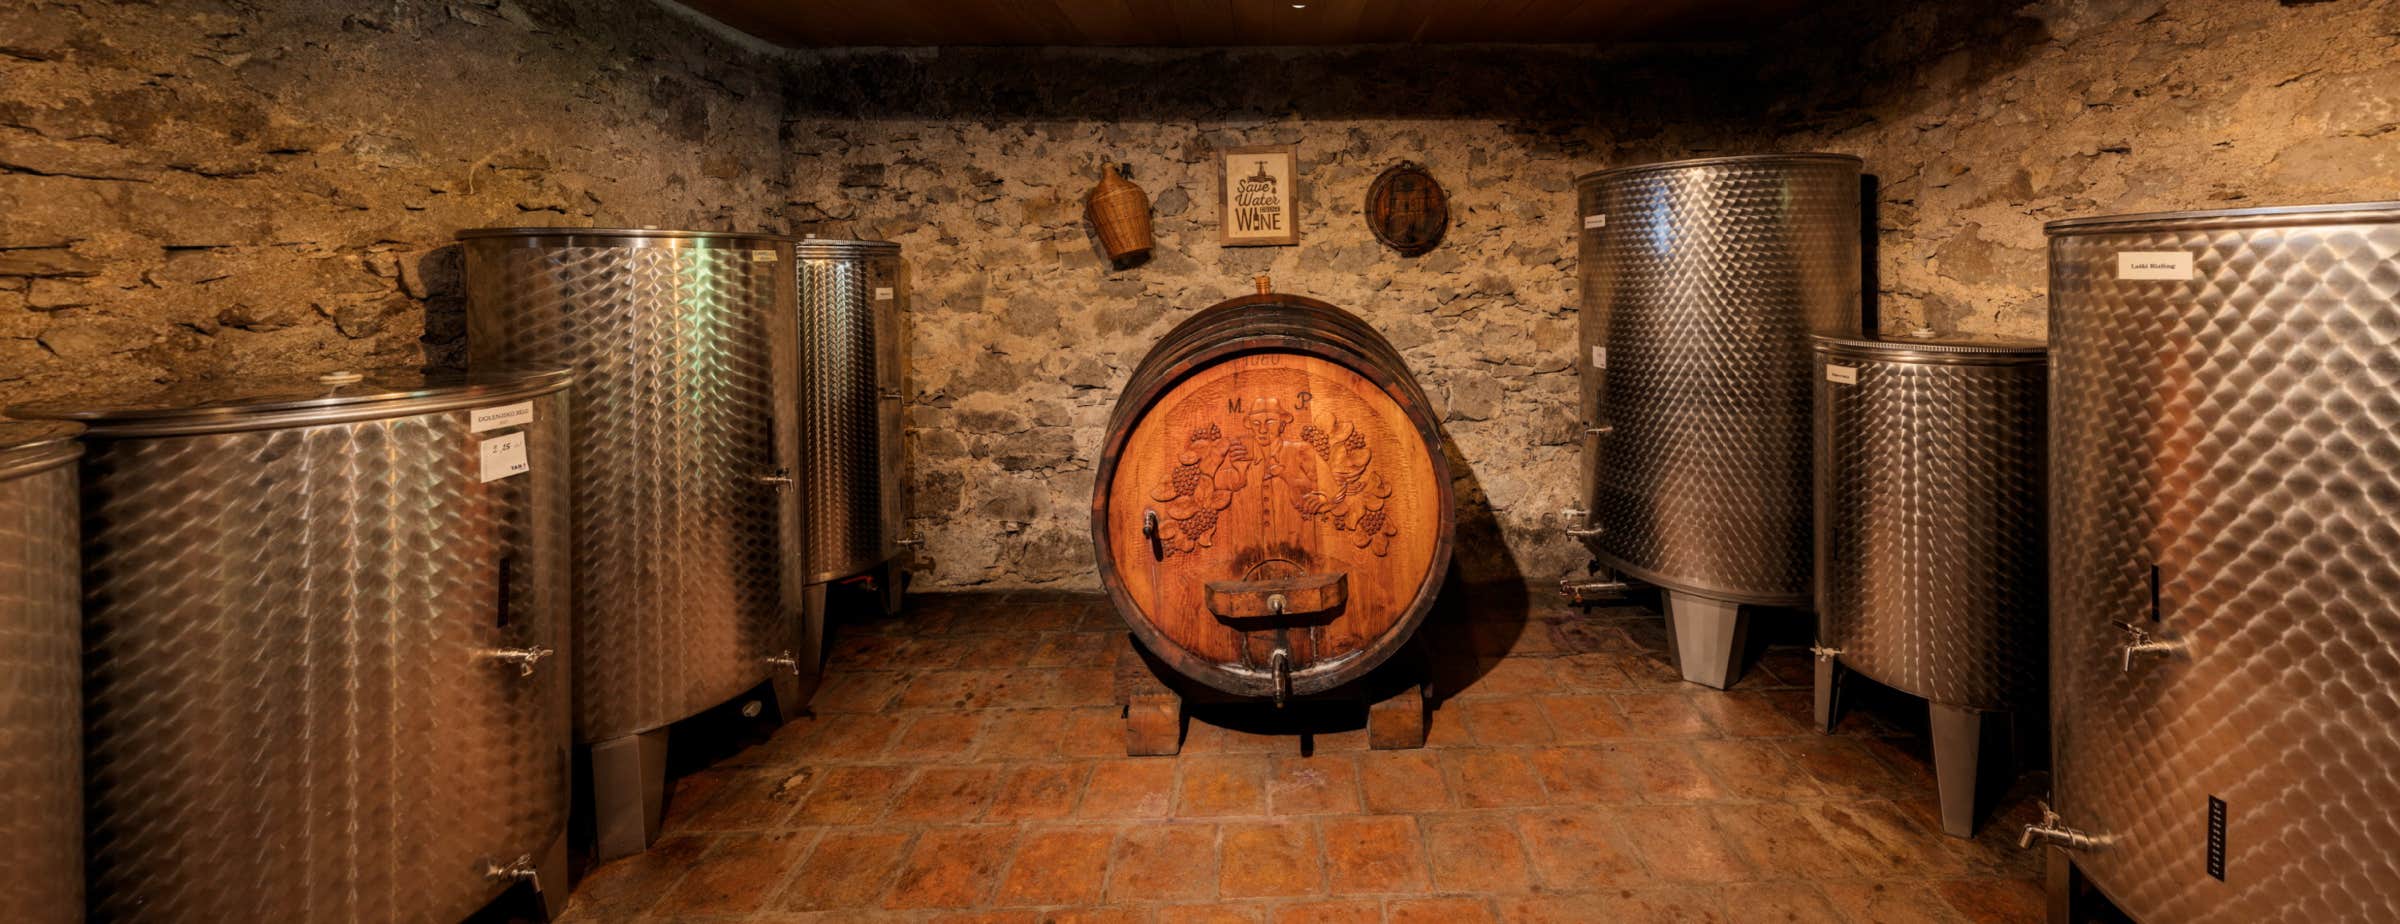 Bild eines Weinkellers mit einem großen Holzfass mit Schnitzereien eines Mannes und Trauben vor der Stirnwand in der Mitte des Bildes. An der rechten und linken Seitenwand sind mehrere Metallfässer aufgestellt.